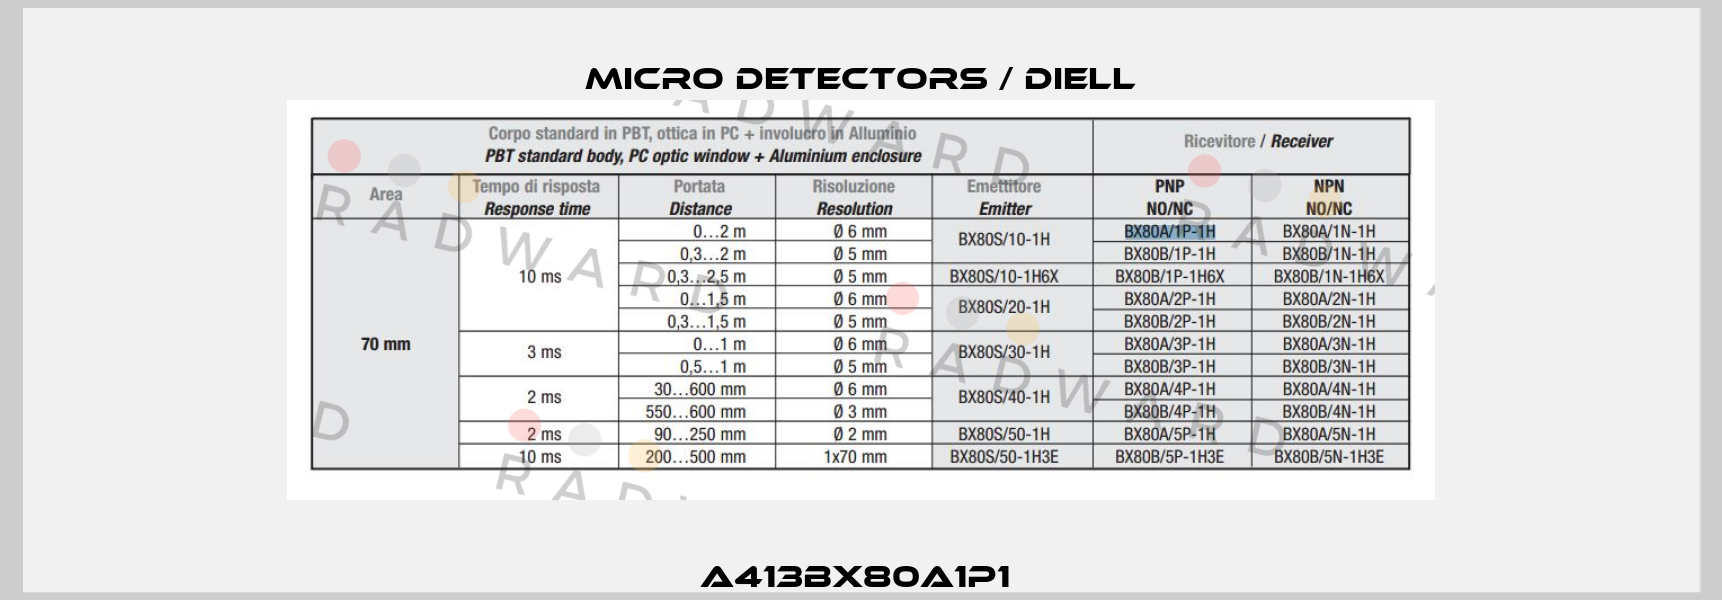 A413BX80A1P1  Micro Detectors / Diell